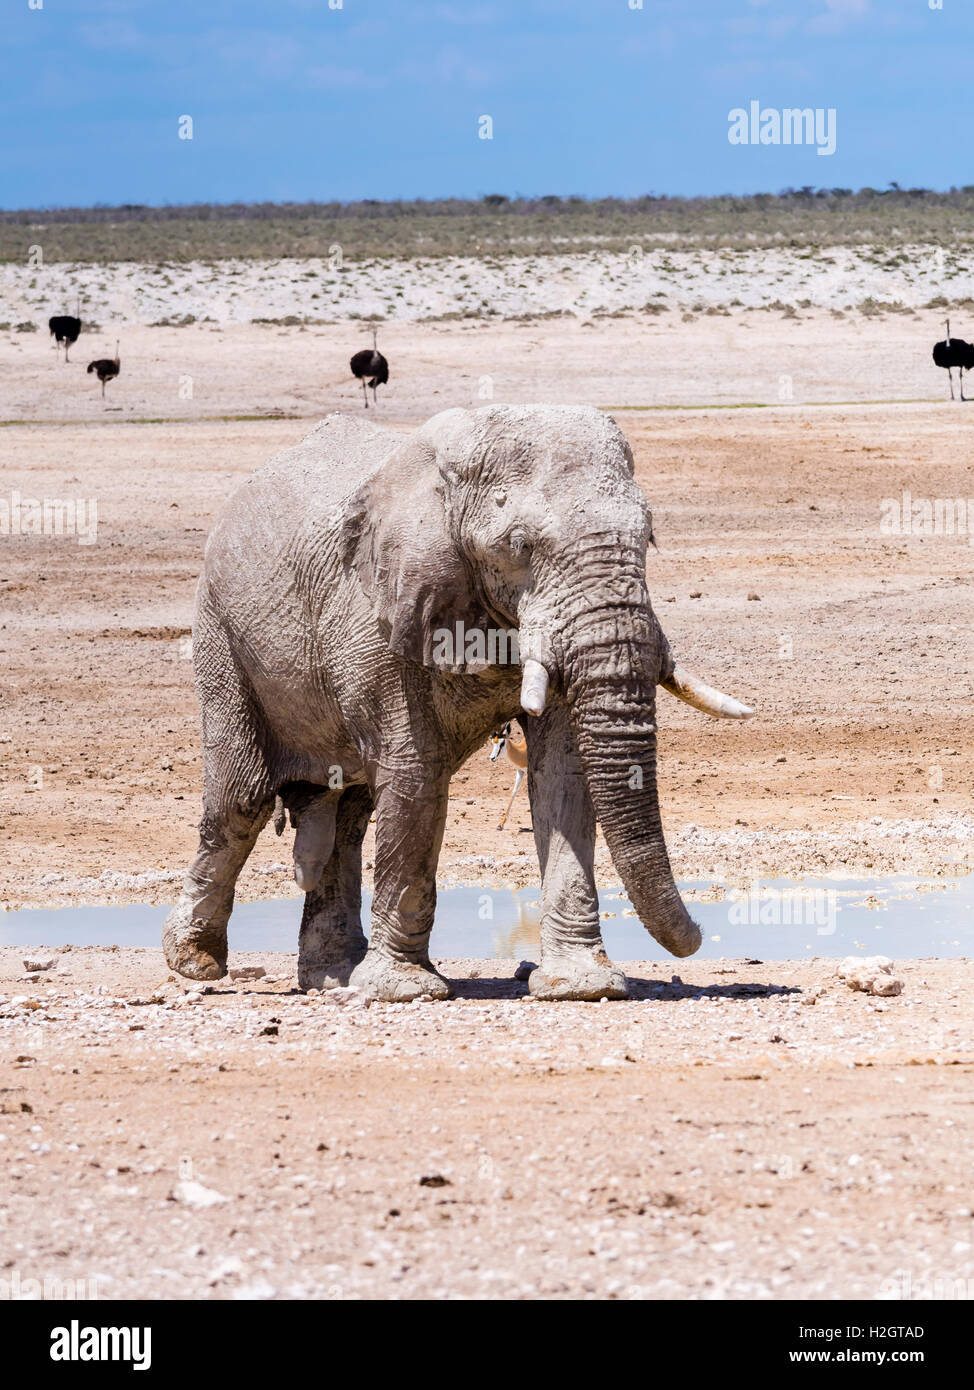 African bush elephant (Loxodonta africana), bull splattered with mud at waterhole, dry landscape, Etosha National Park, Namibia Stock Photo